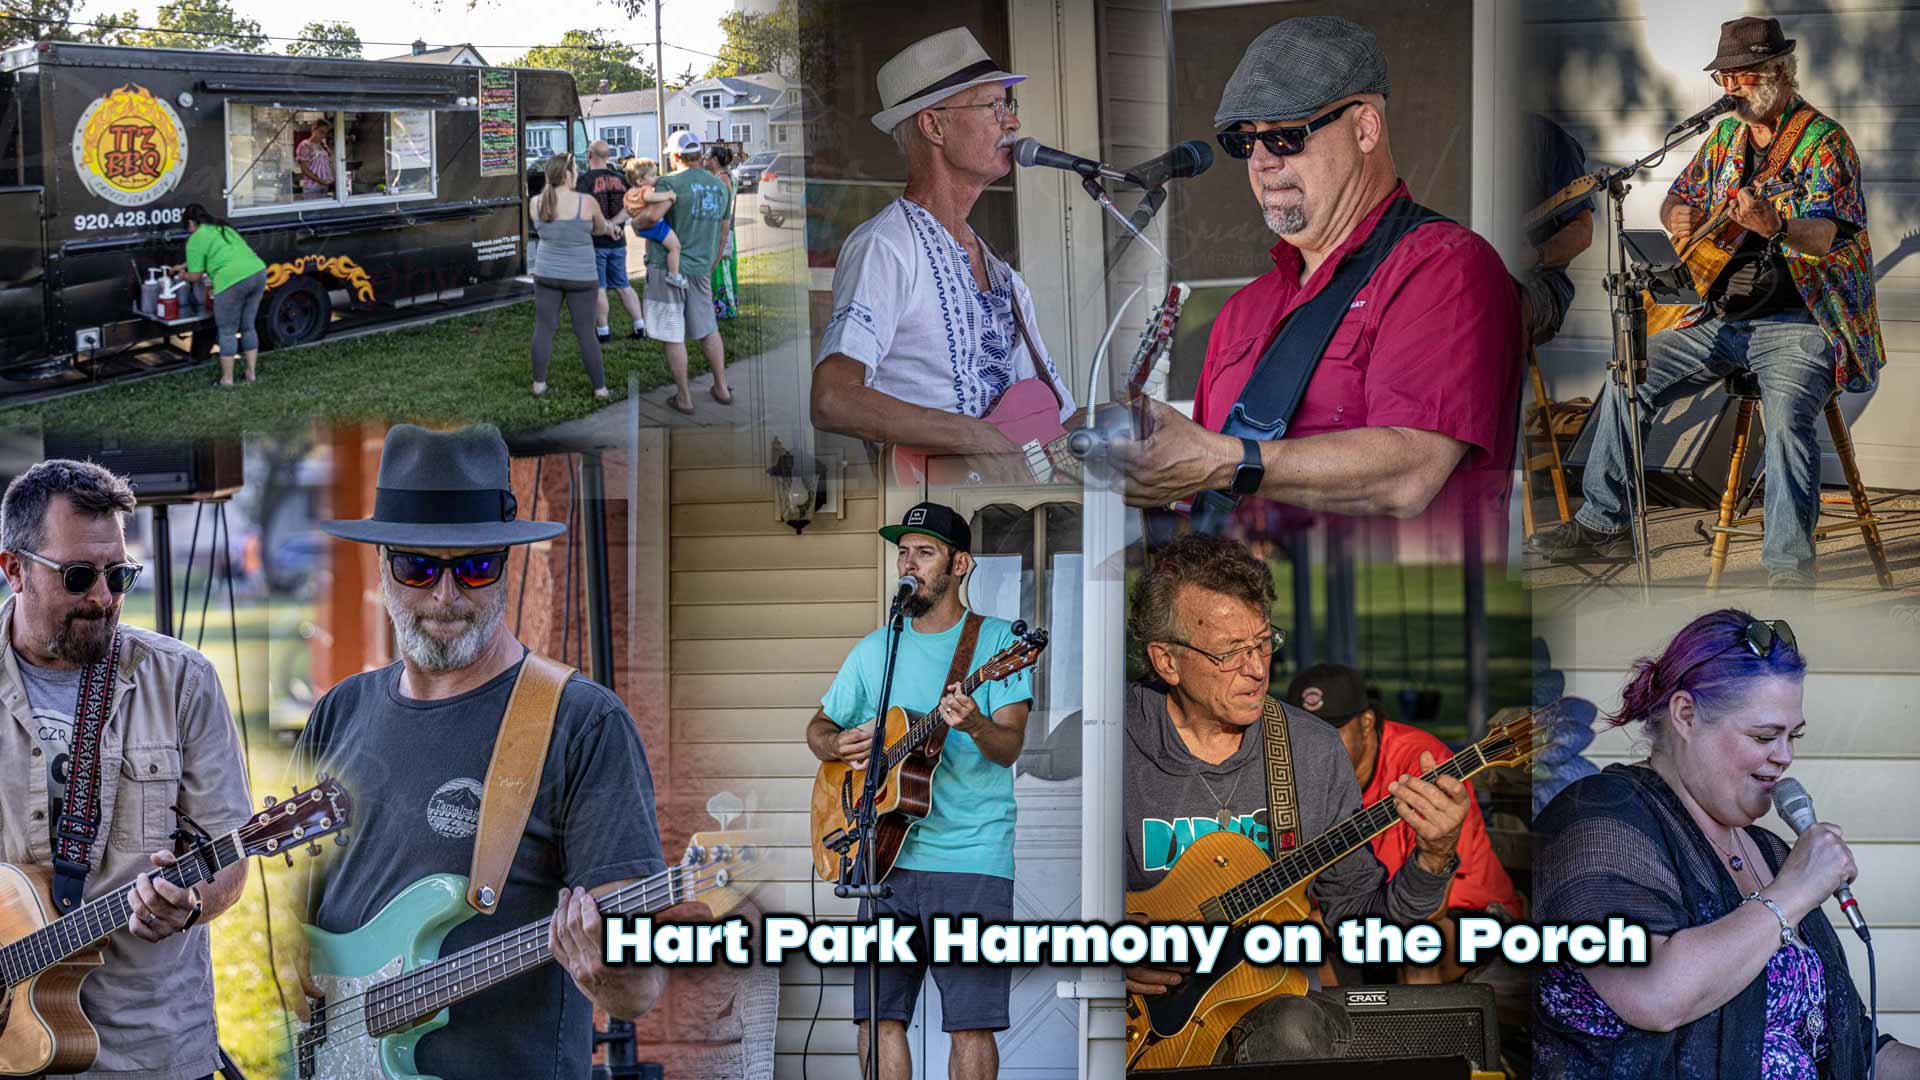 Hart Park Harmony on the Porch in Menasha Wi